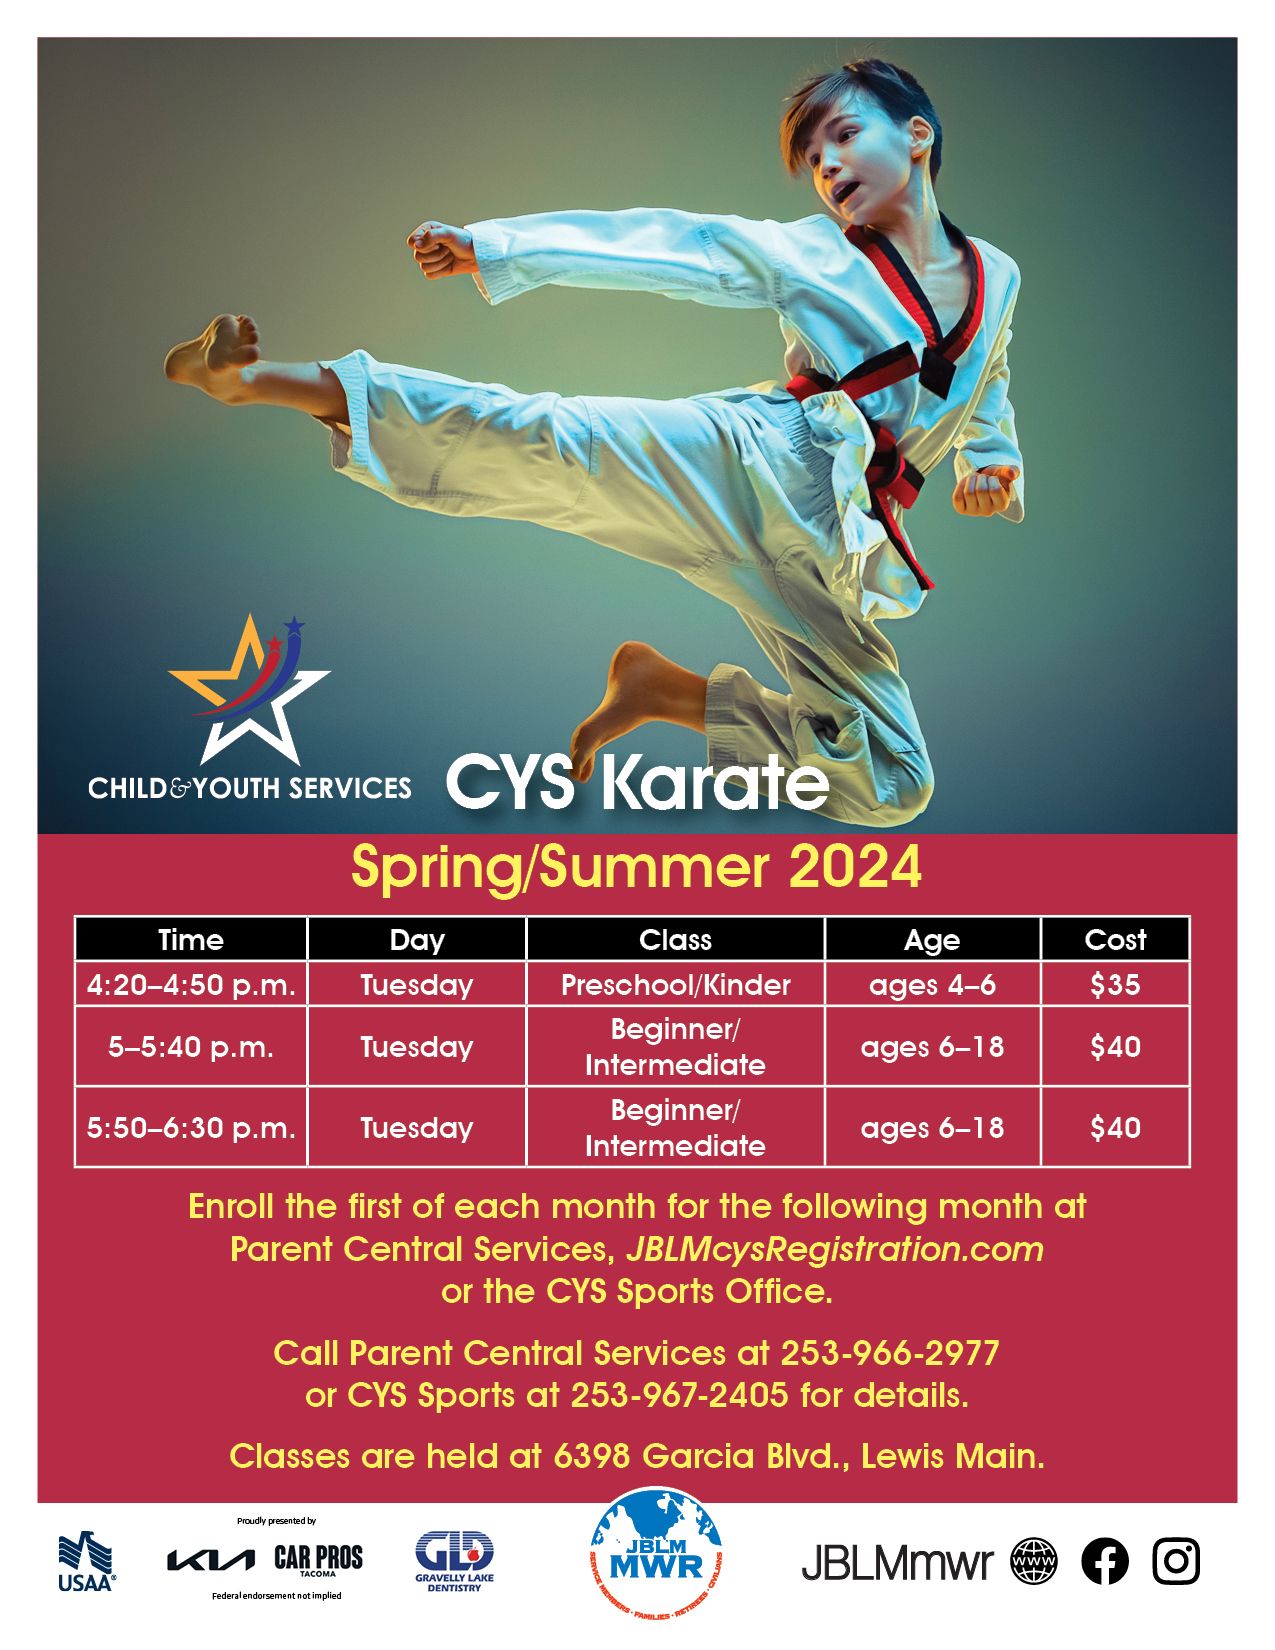 CYS Karate flier Spring Summer 2024.jpg